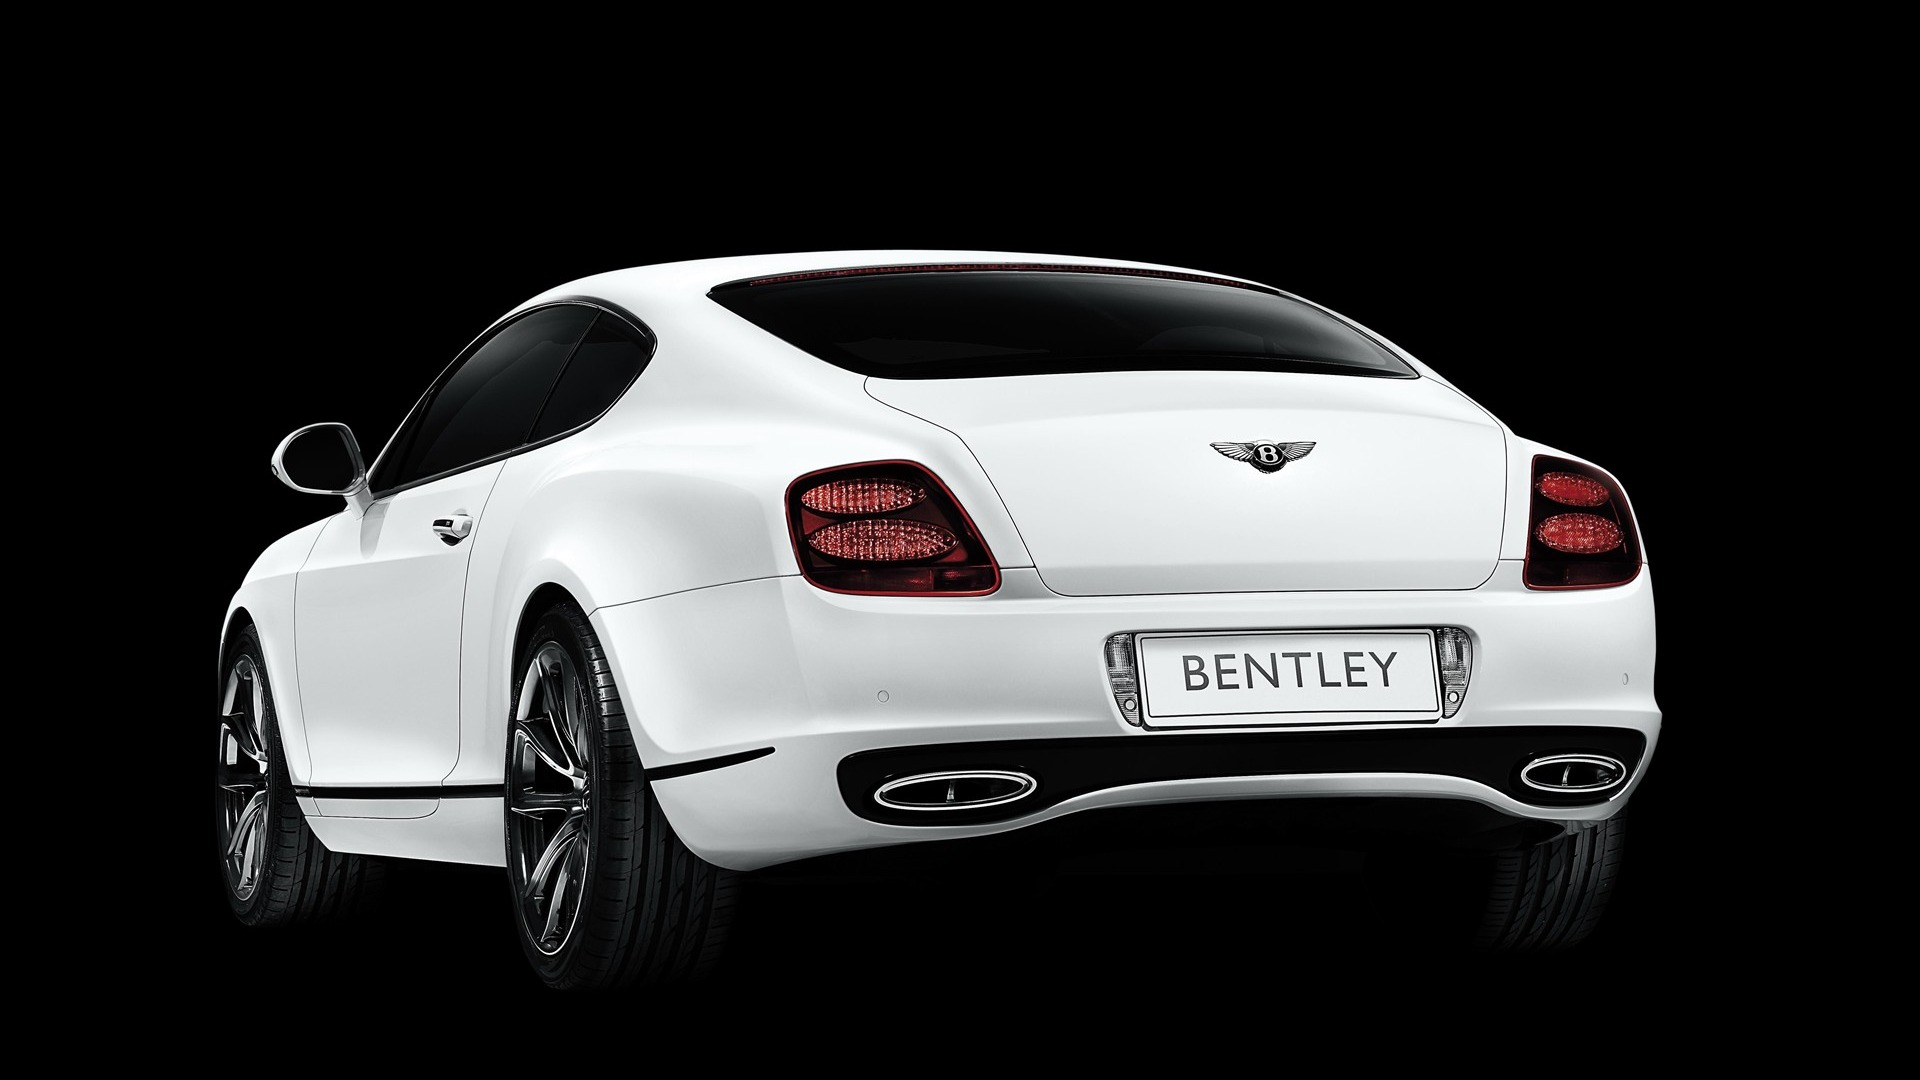 Bentley 宾利 壁纸专辑(一)3 - 1920x1080